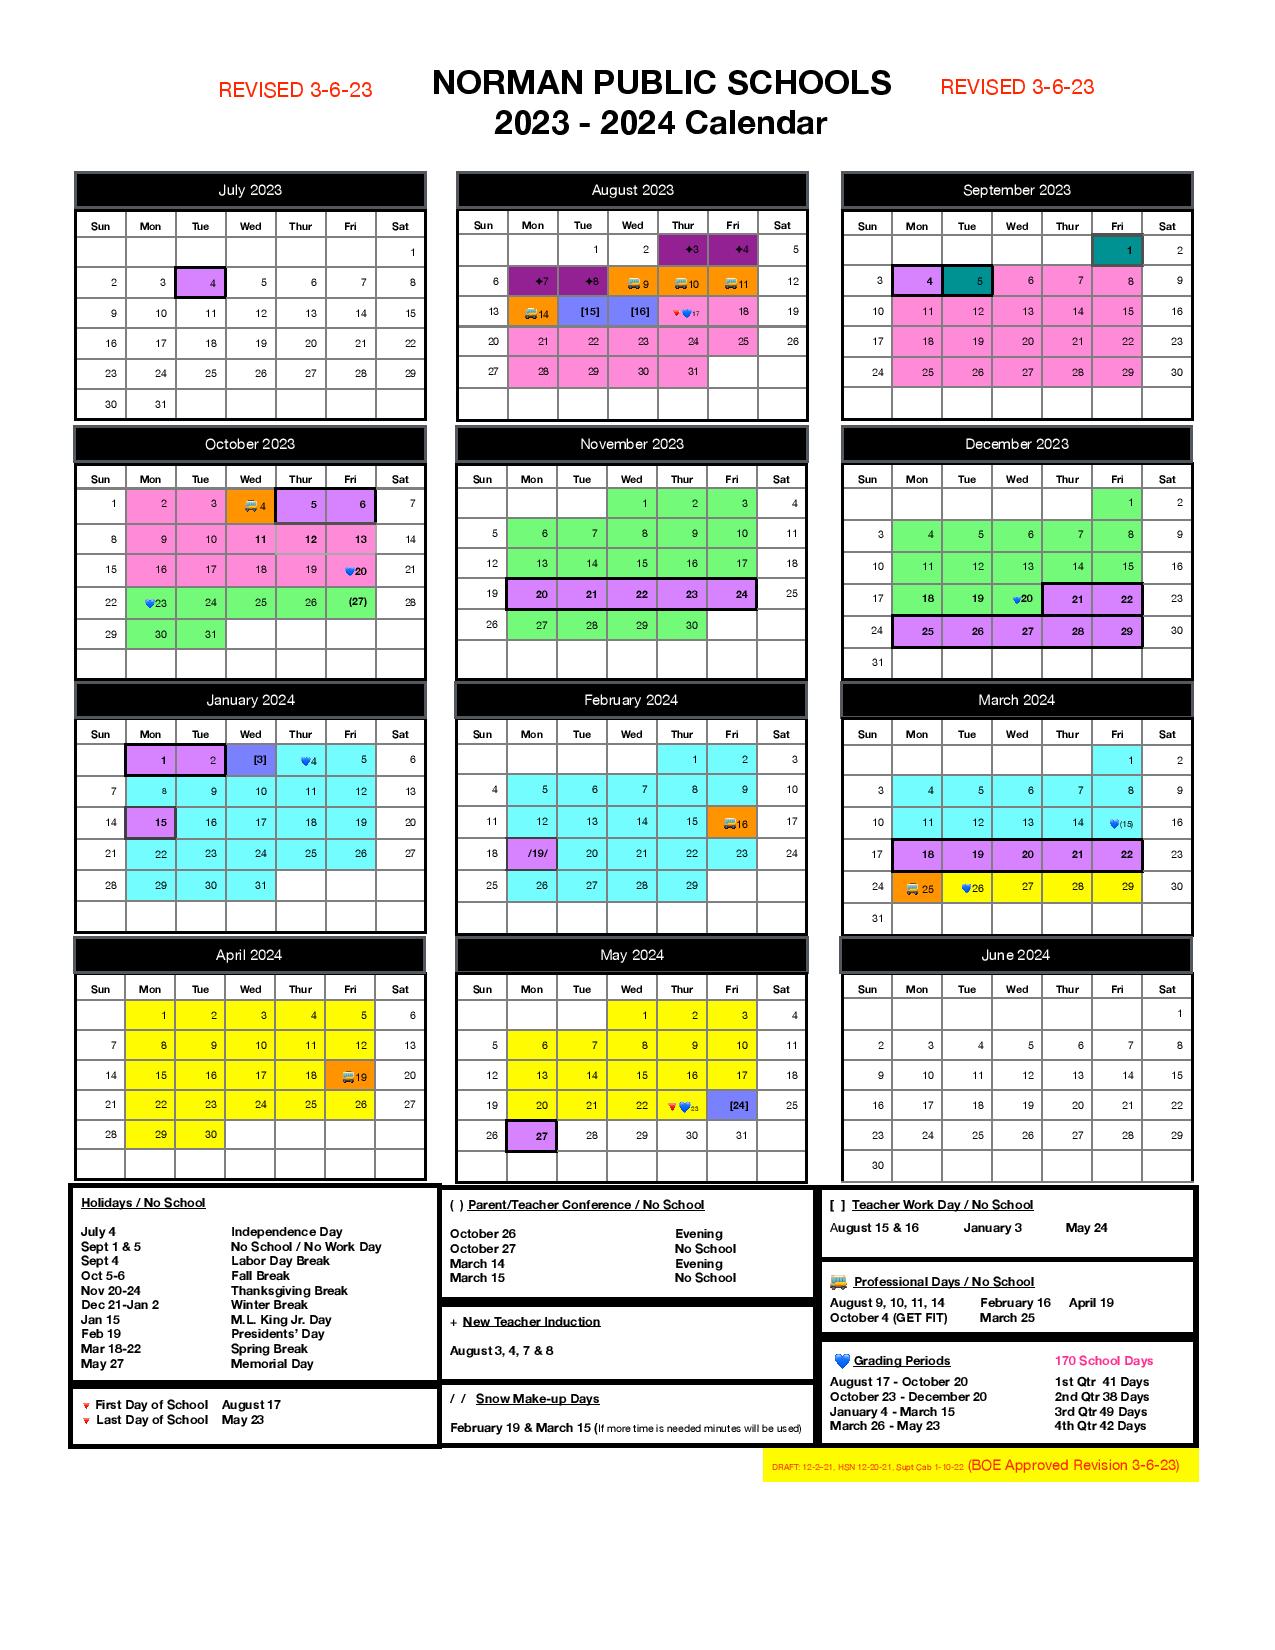 Norman Public Schools Calendar 2024 (Holiday Breaks)